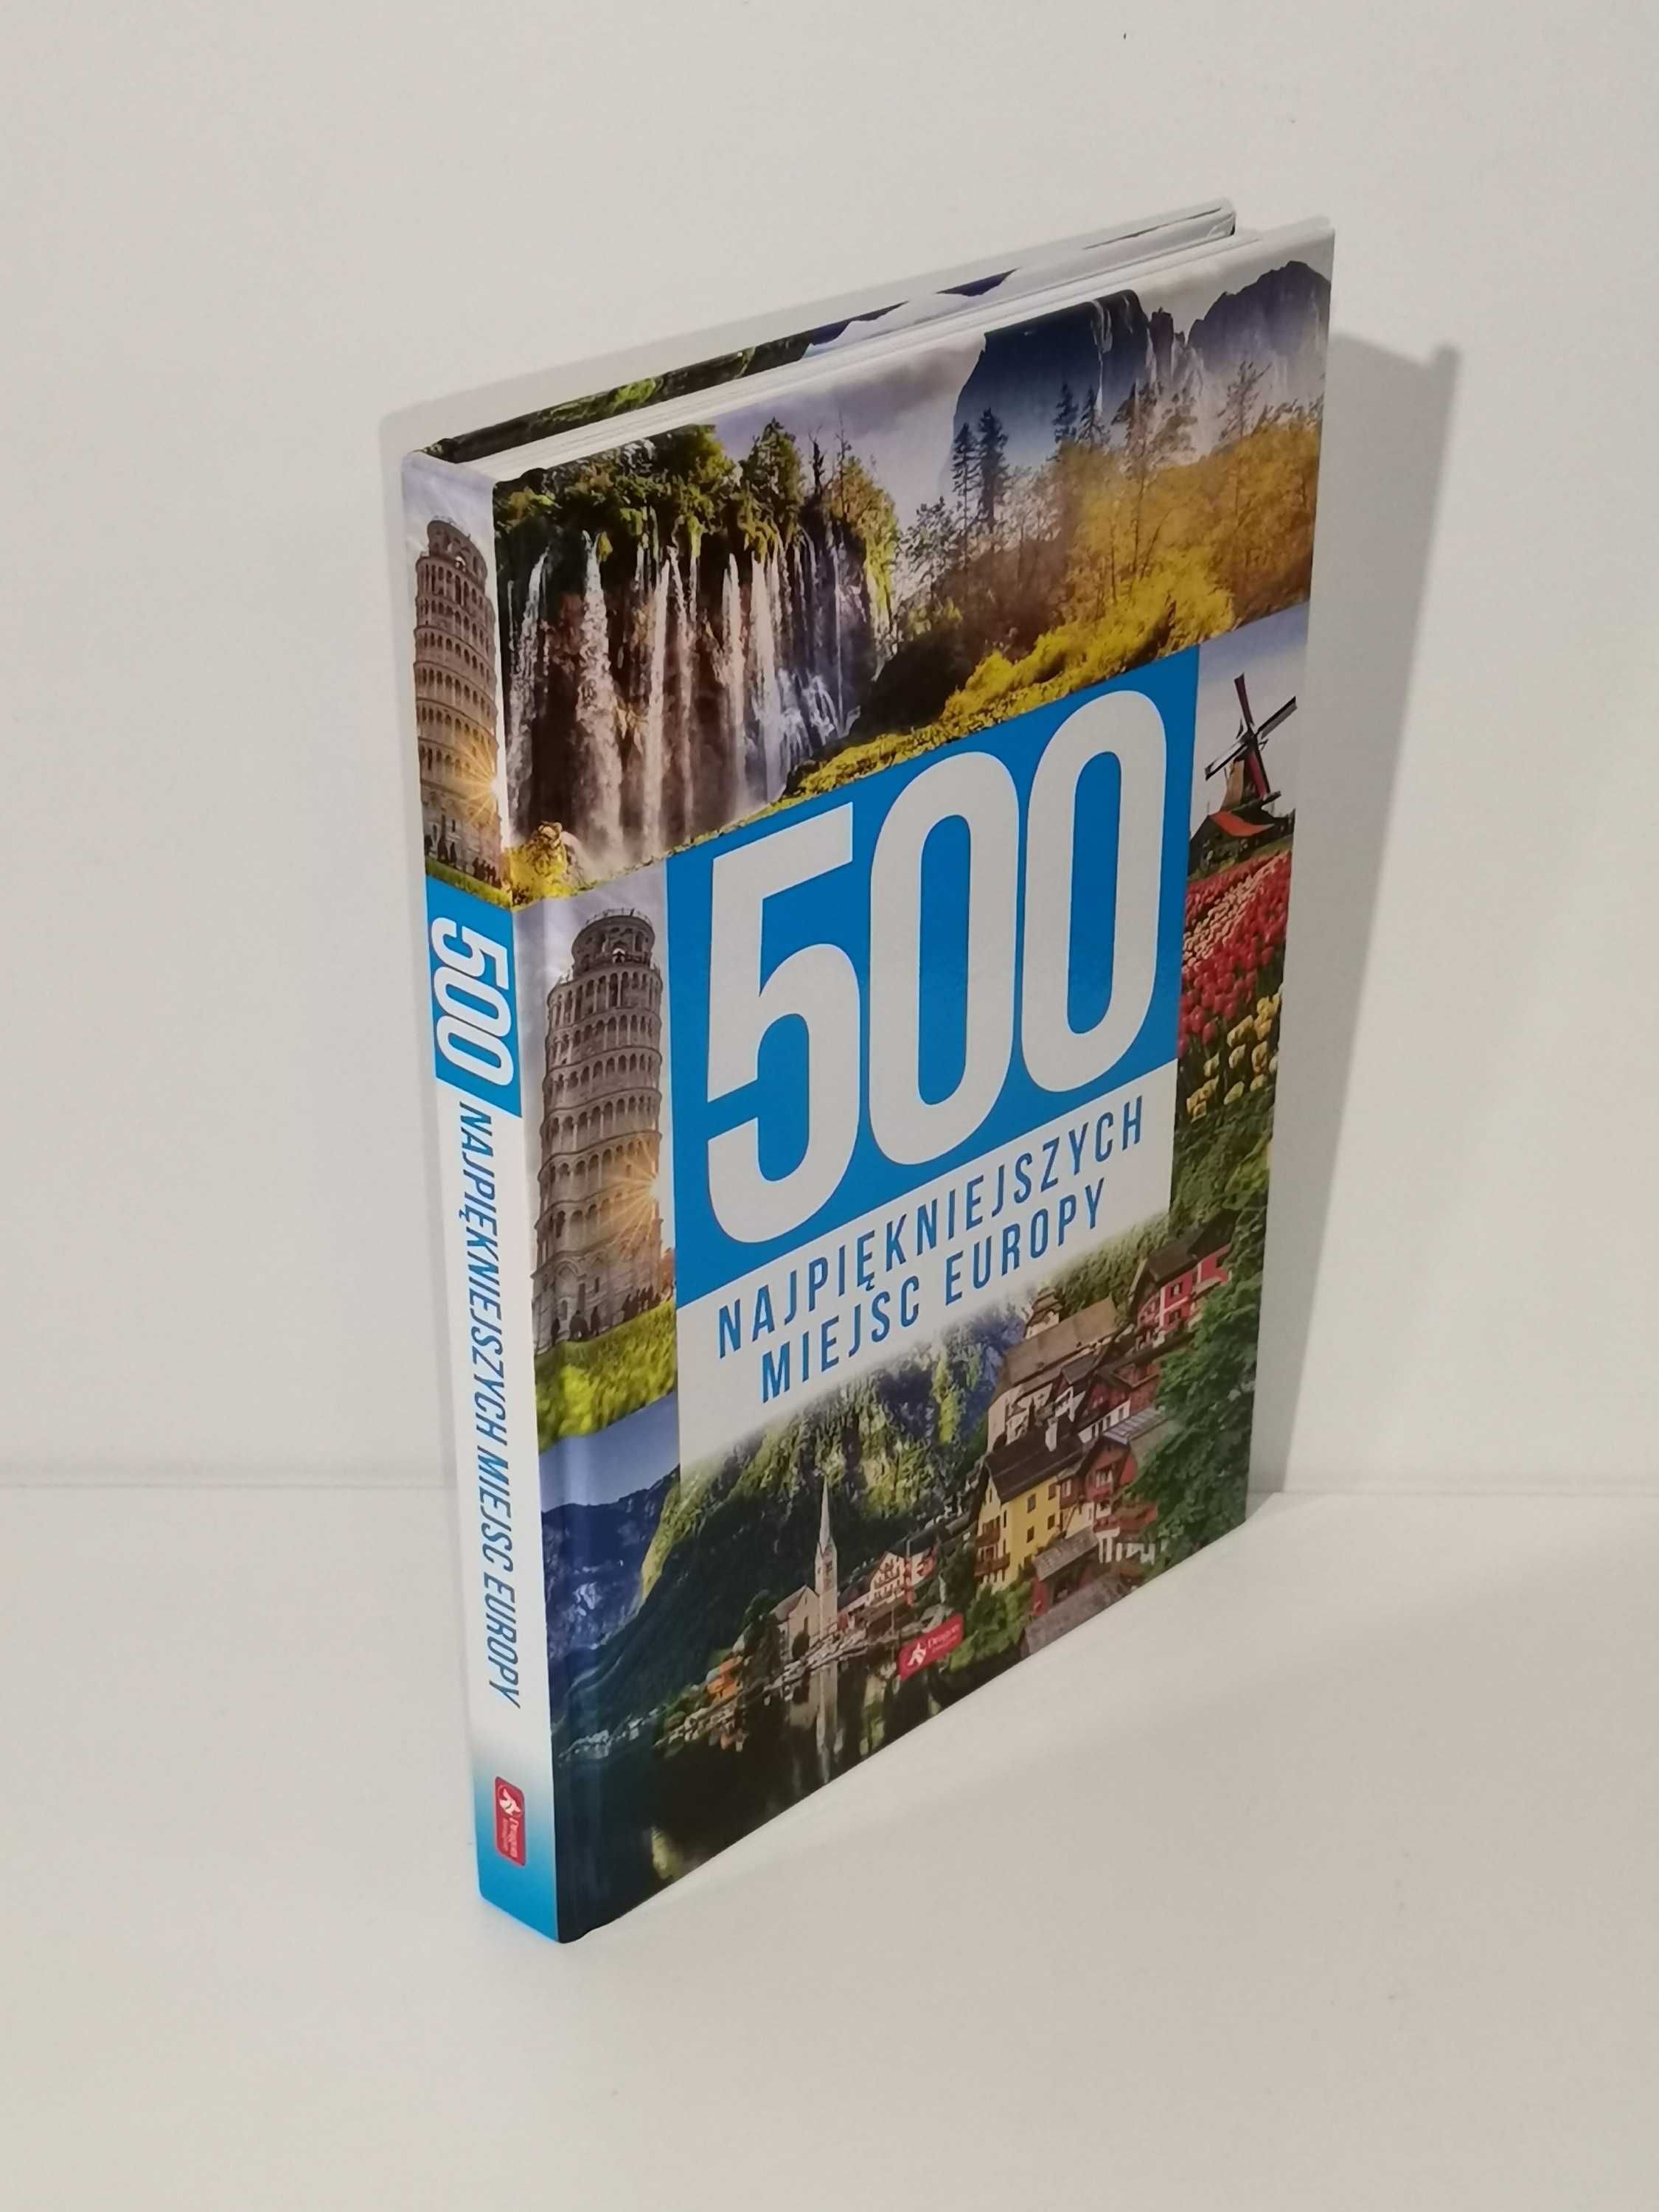 Książka - "500 najpiękniejszych miejsc Europy" - autor zbiorowy